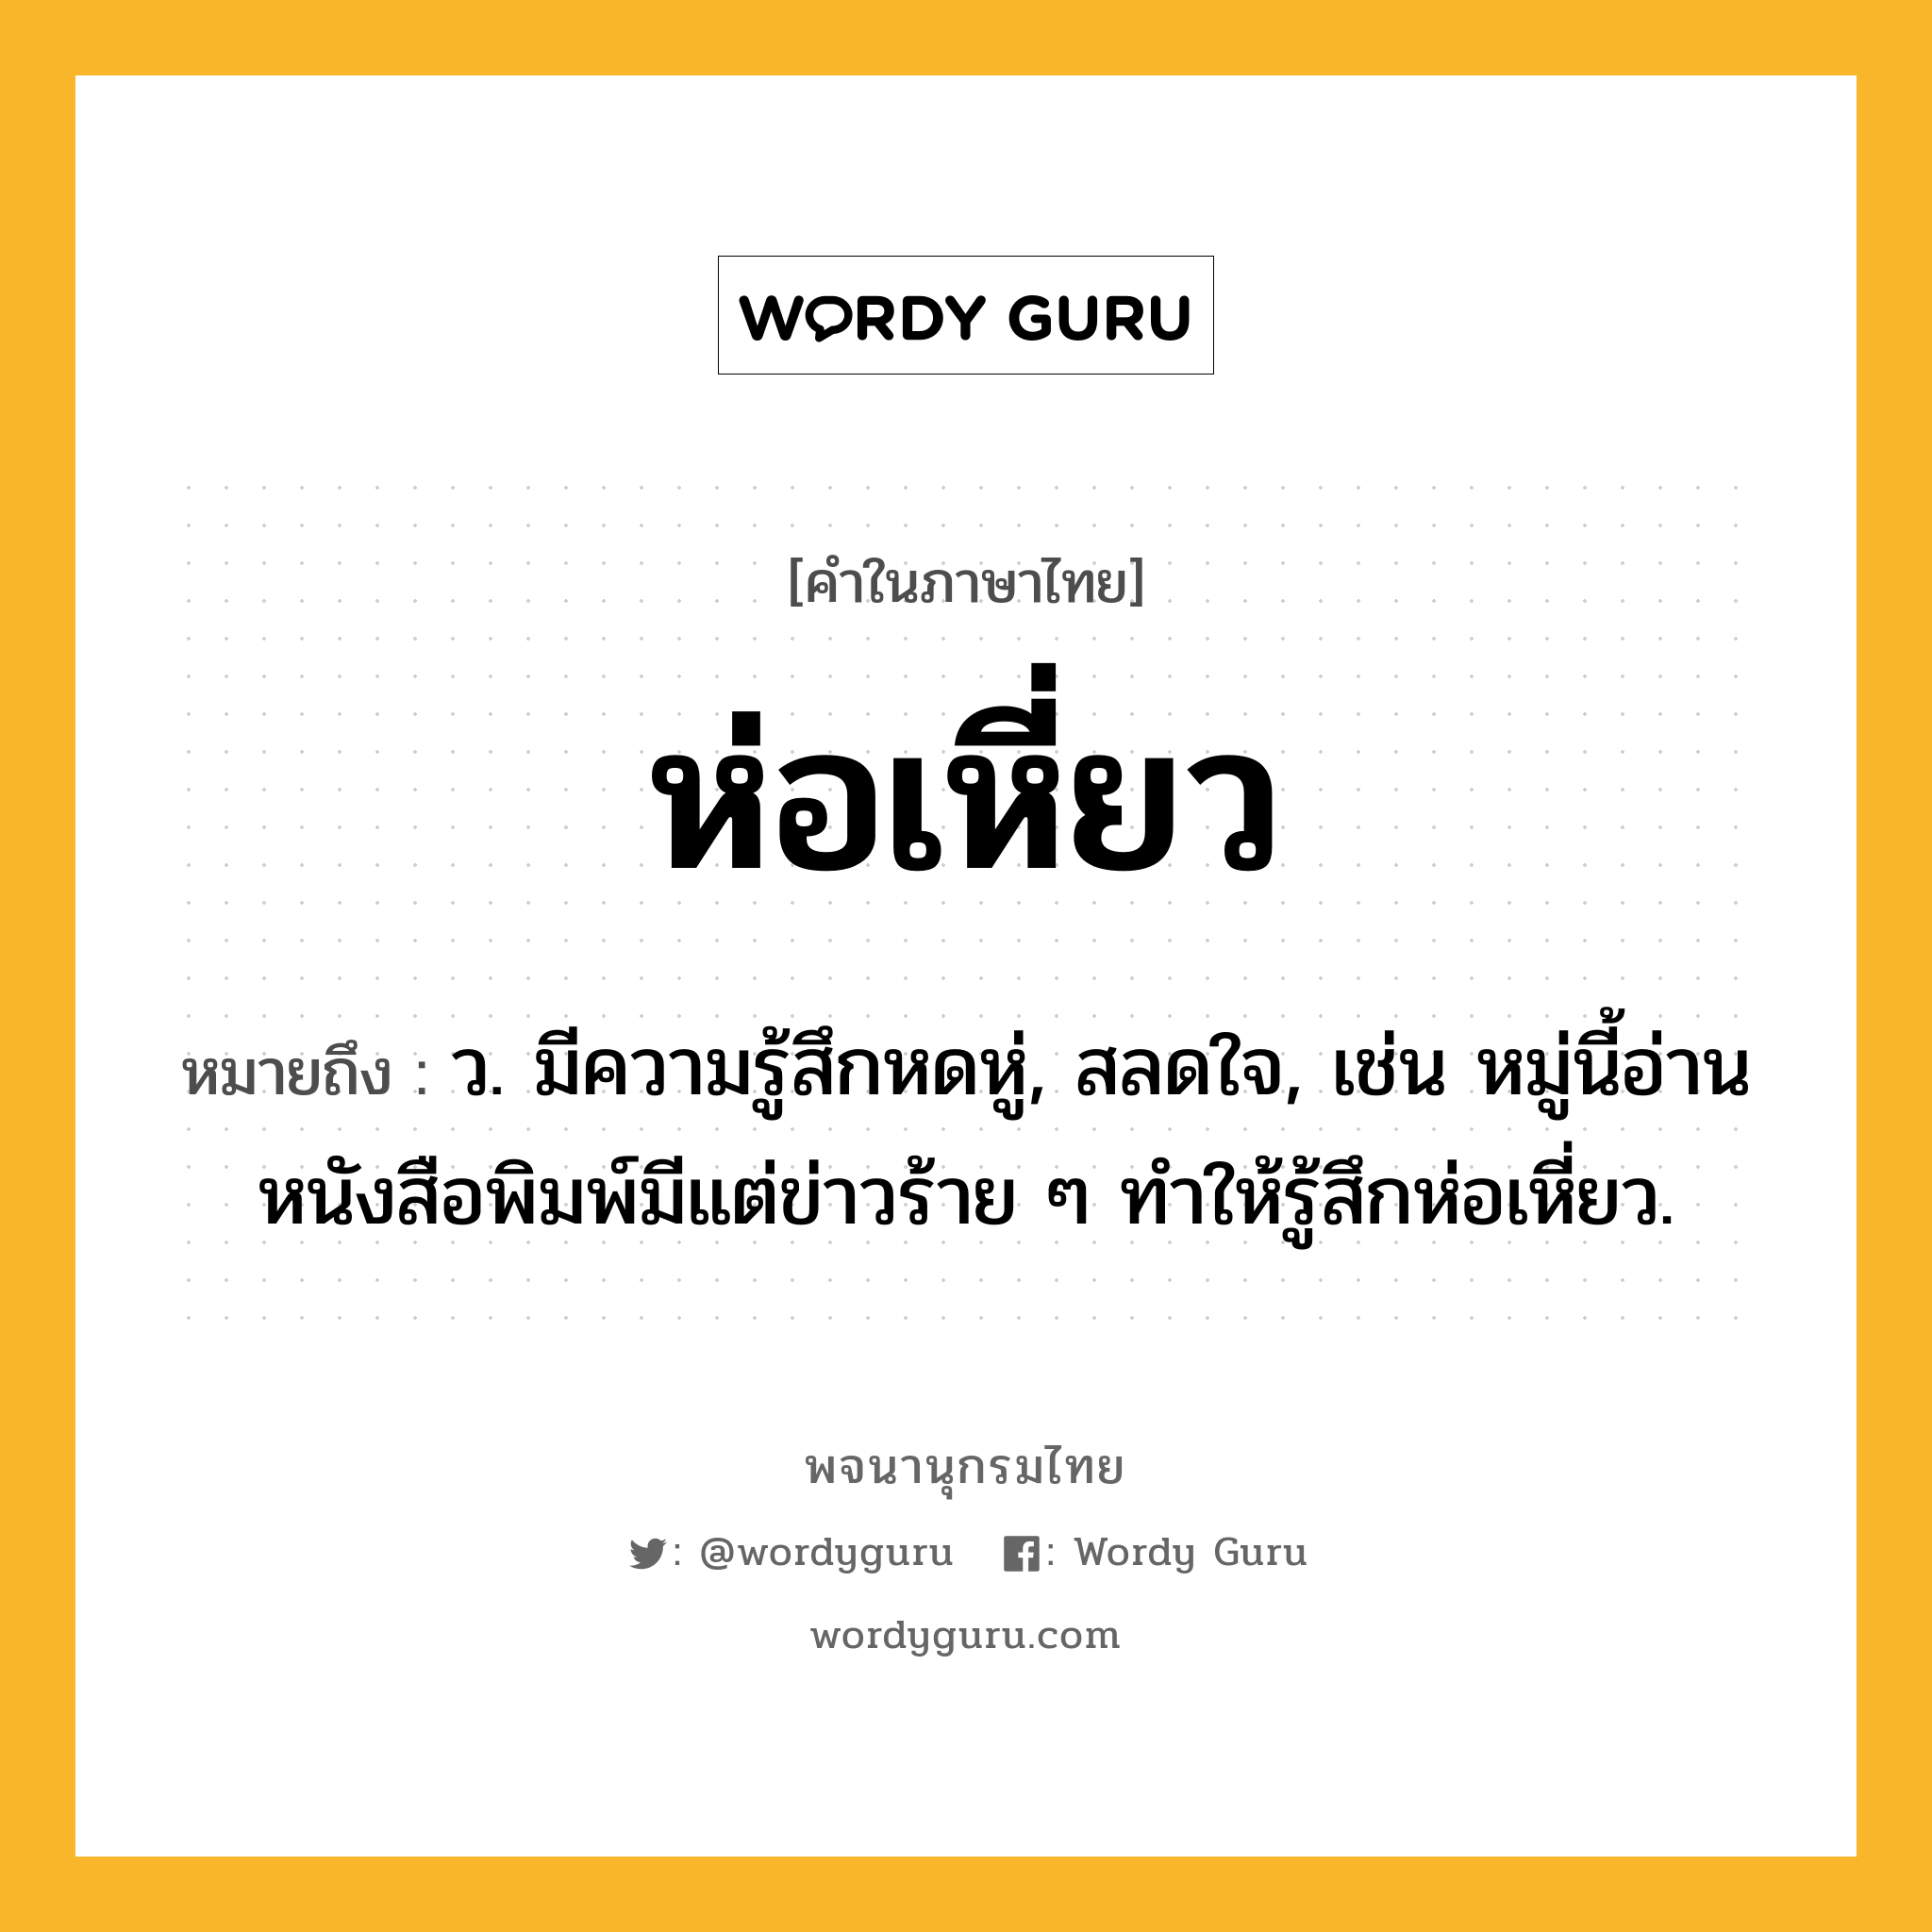 ห่อเหี่ยว ความหมาย หมายถึงอะไร?, คำในภาษาไทย ห่อเหี่ยว หมายถึง ว. มีความรู้สึกหดหู่, สลดใจ, เช่น หมู่นี้อ่านหนังสือพิมพ์มีแต่ข่าวร้าย ๆ ทำให้รู้สึกห่อเหี่ยว.